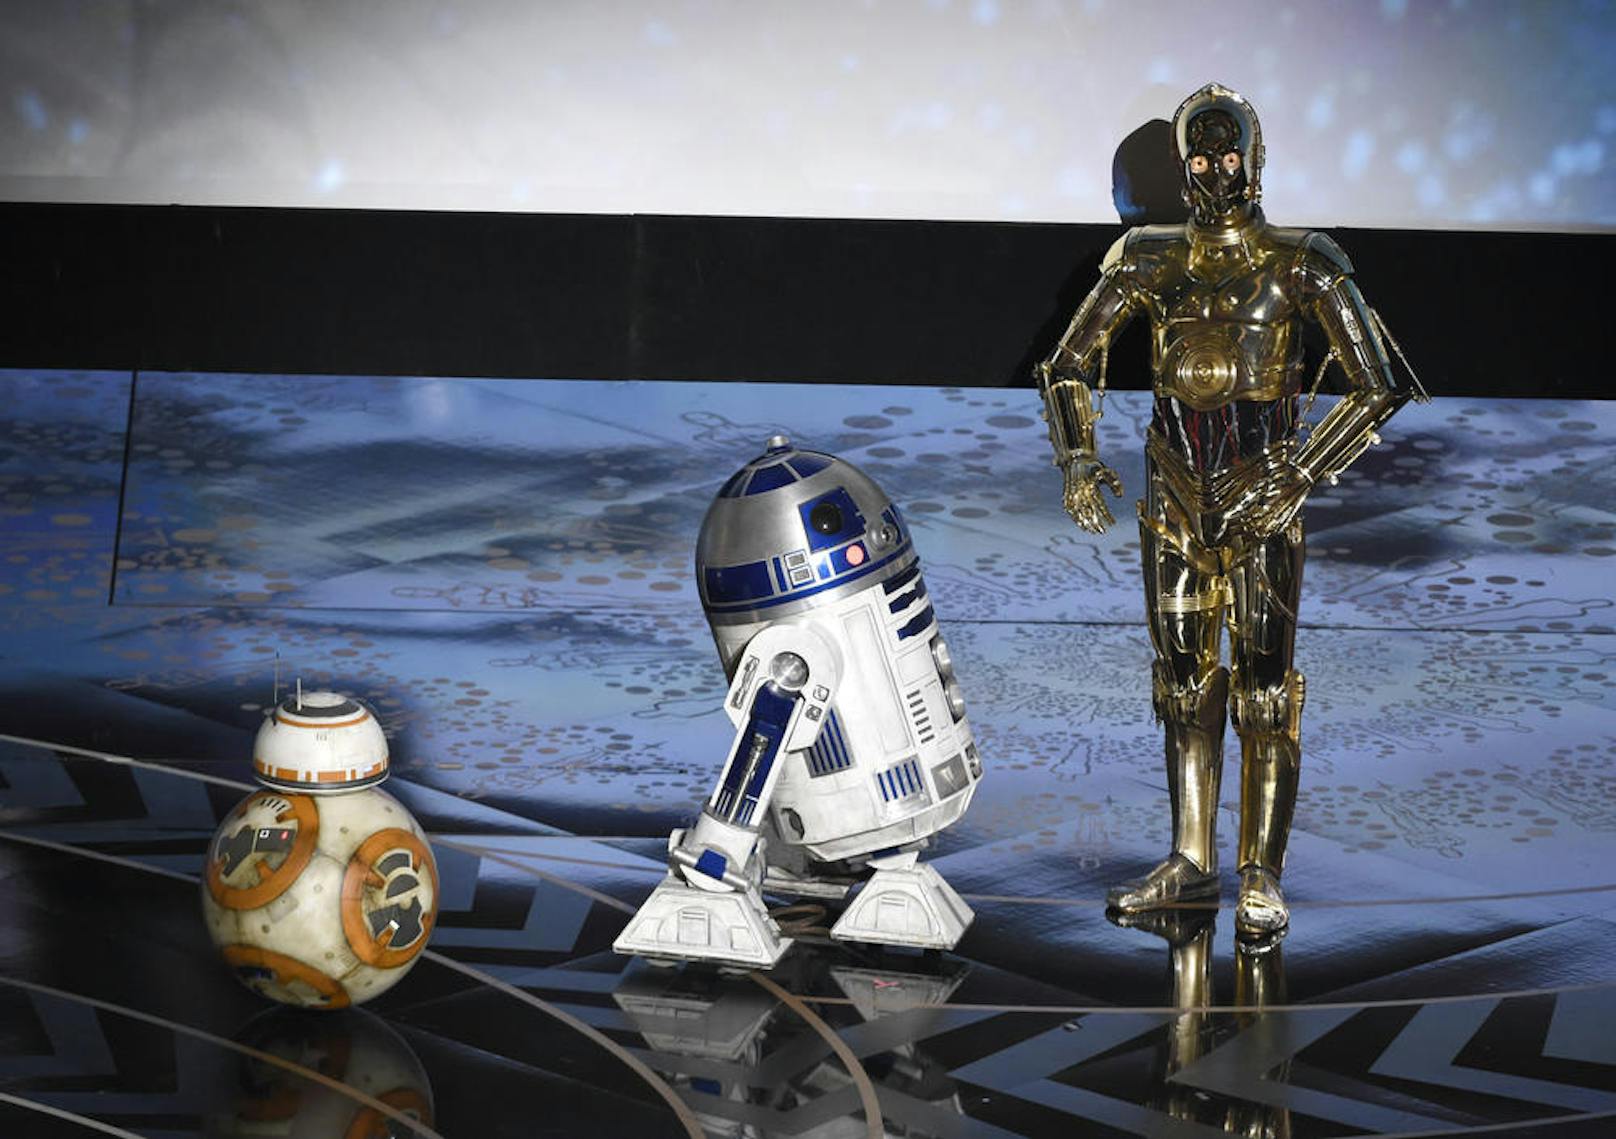 Die Star Wars-Roboter aus "Star Wars", BB-8,  R2-D2, und C-3PO sind ebenfalls auf der Bühne.